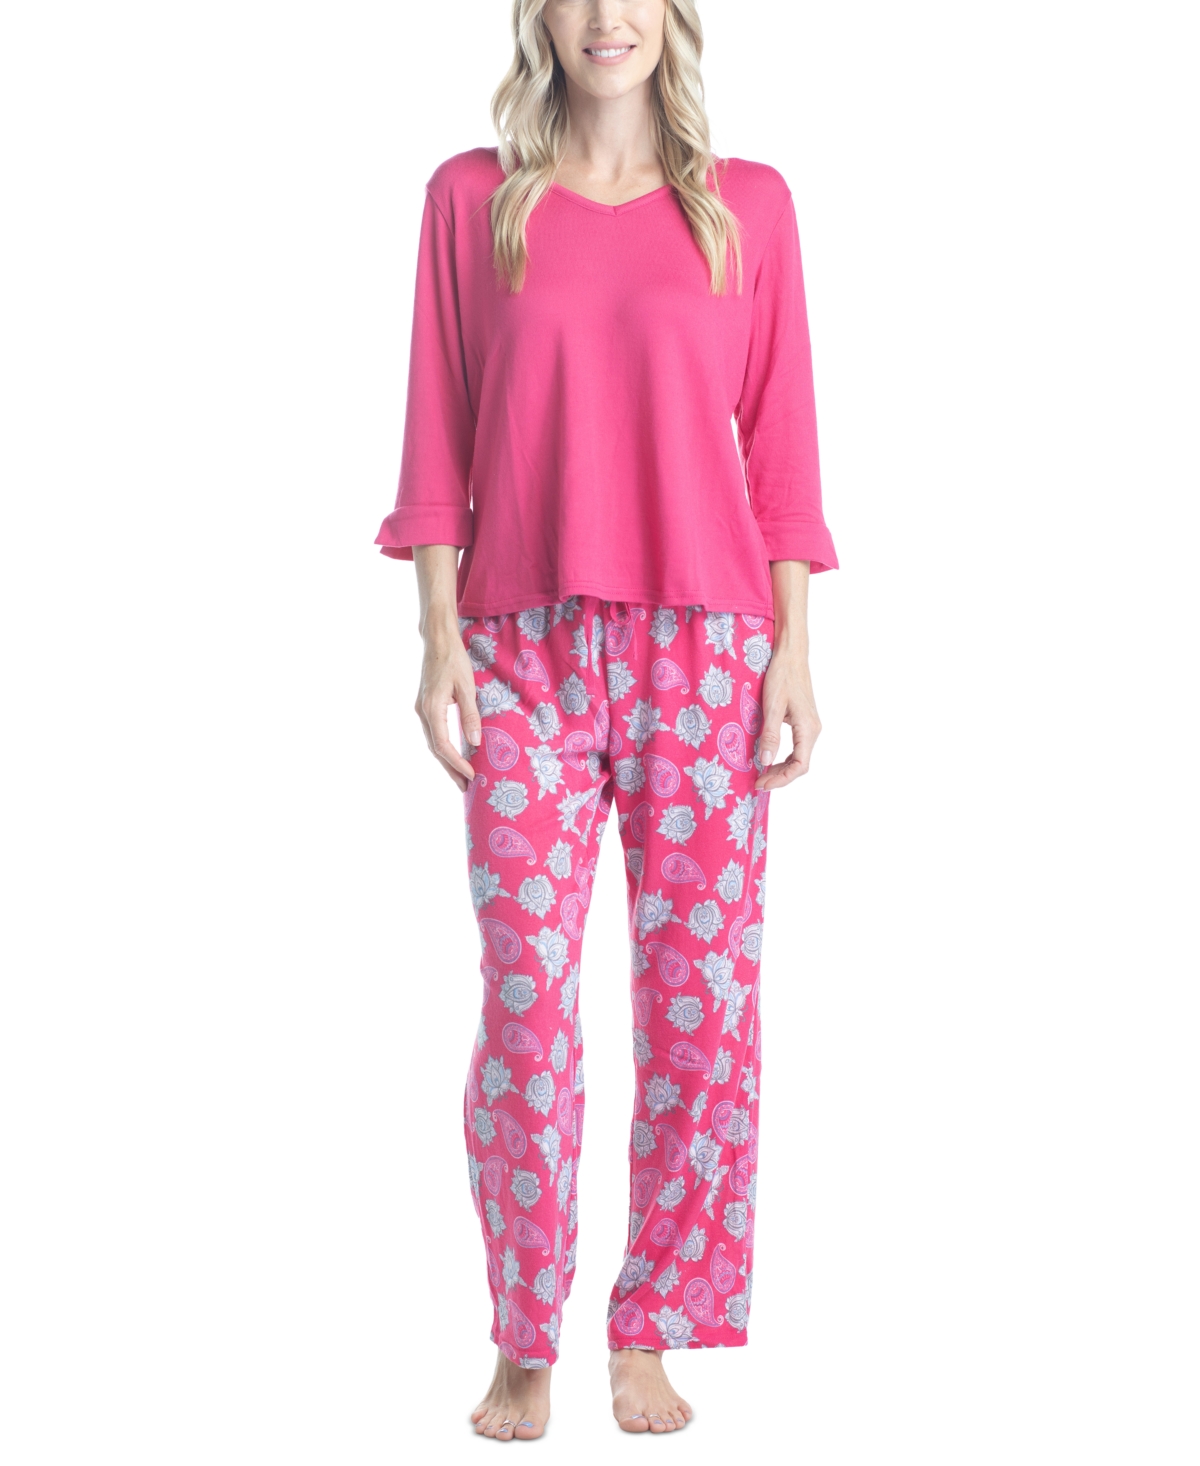 Muk Luks Women's 3/4 Sleeve Top & Boot-cut Pajama Pants Set In Pink Itak